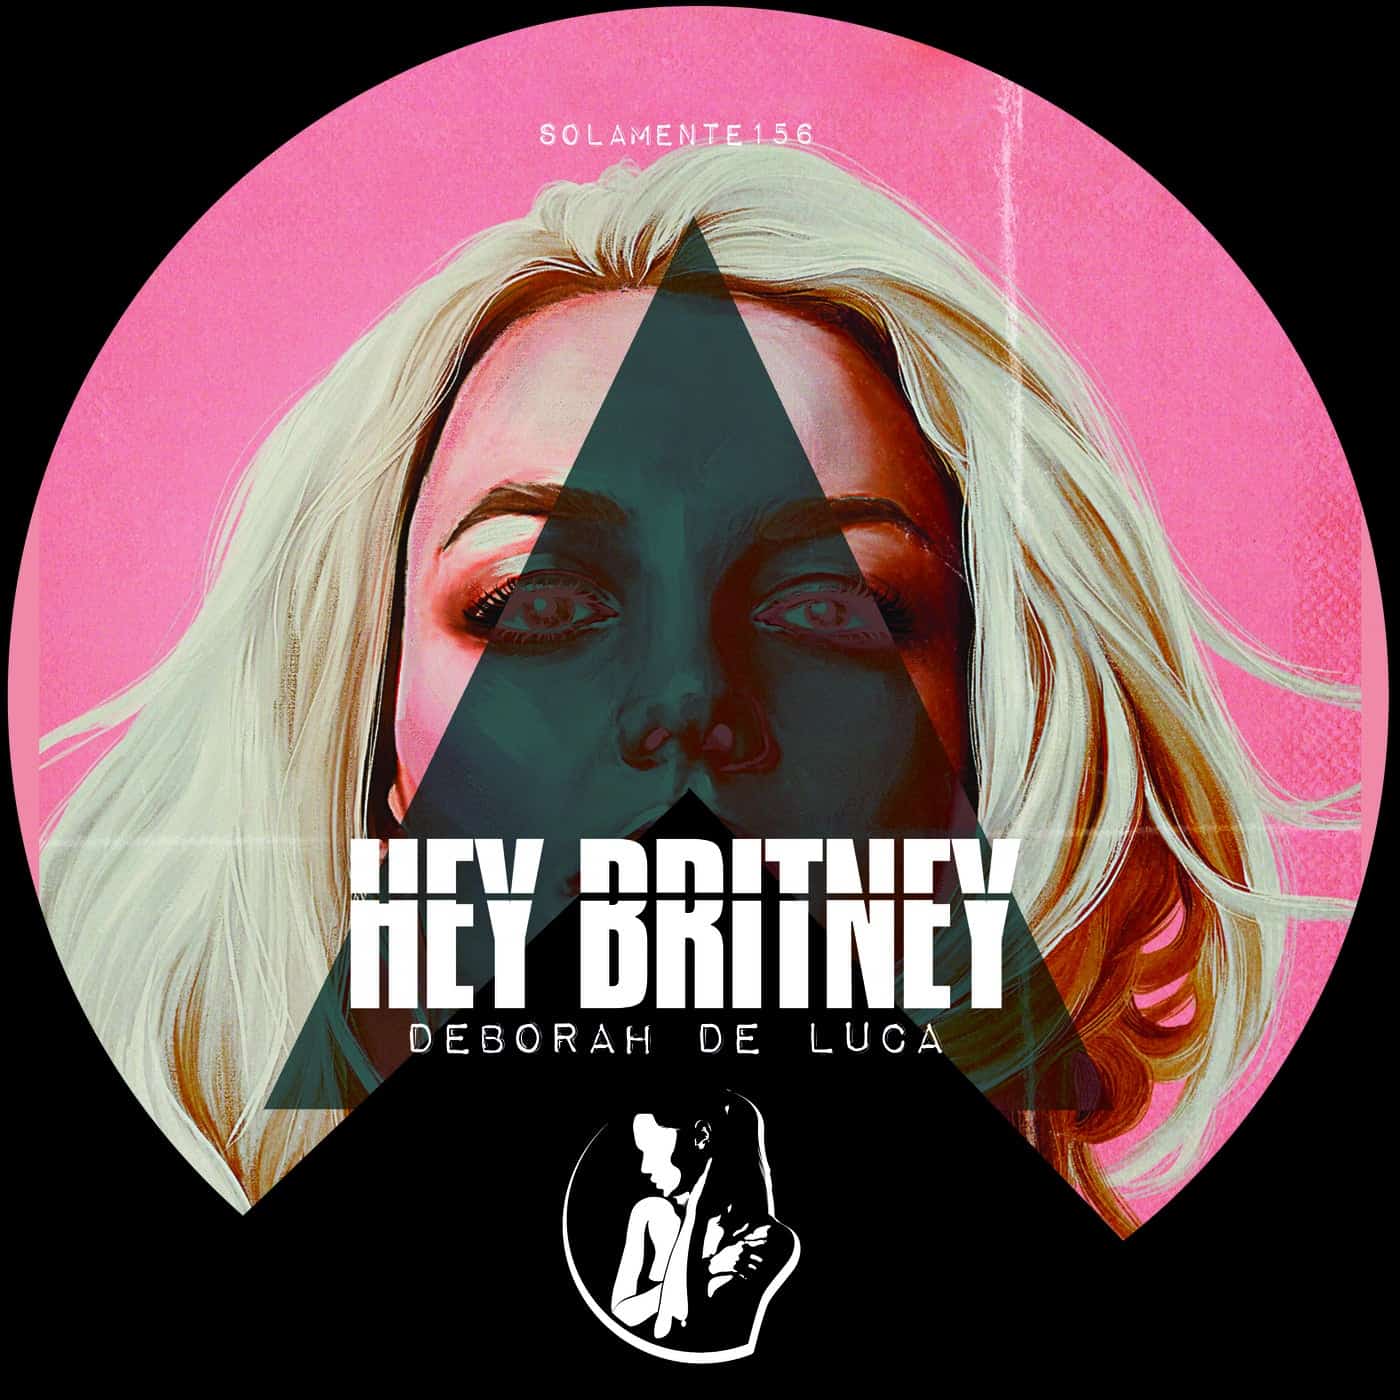 image cover: Deborah De Luca - Hey Britney / SOLAMENTE156